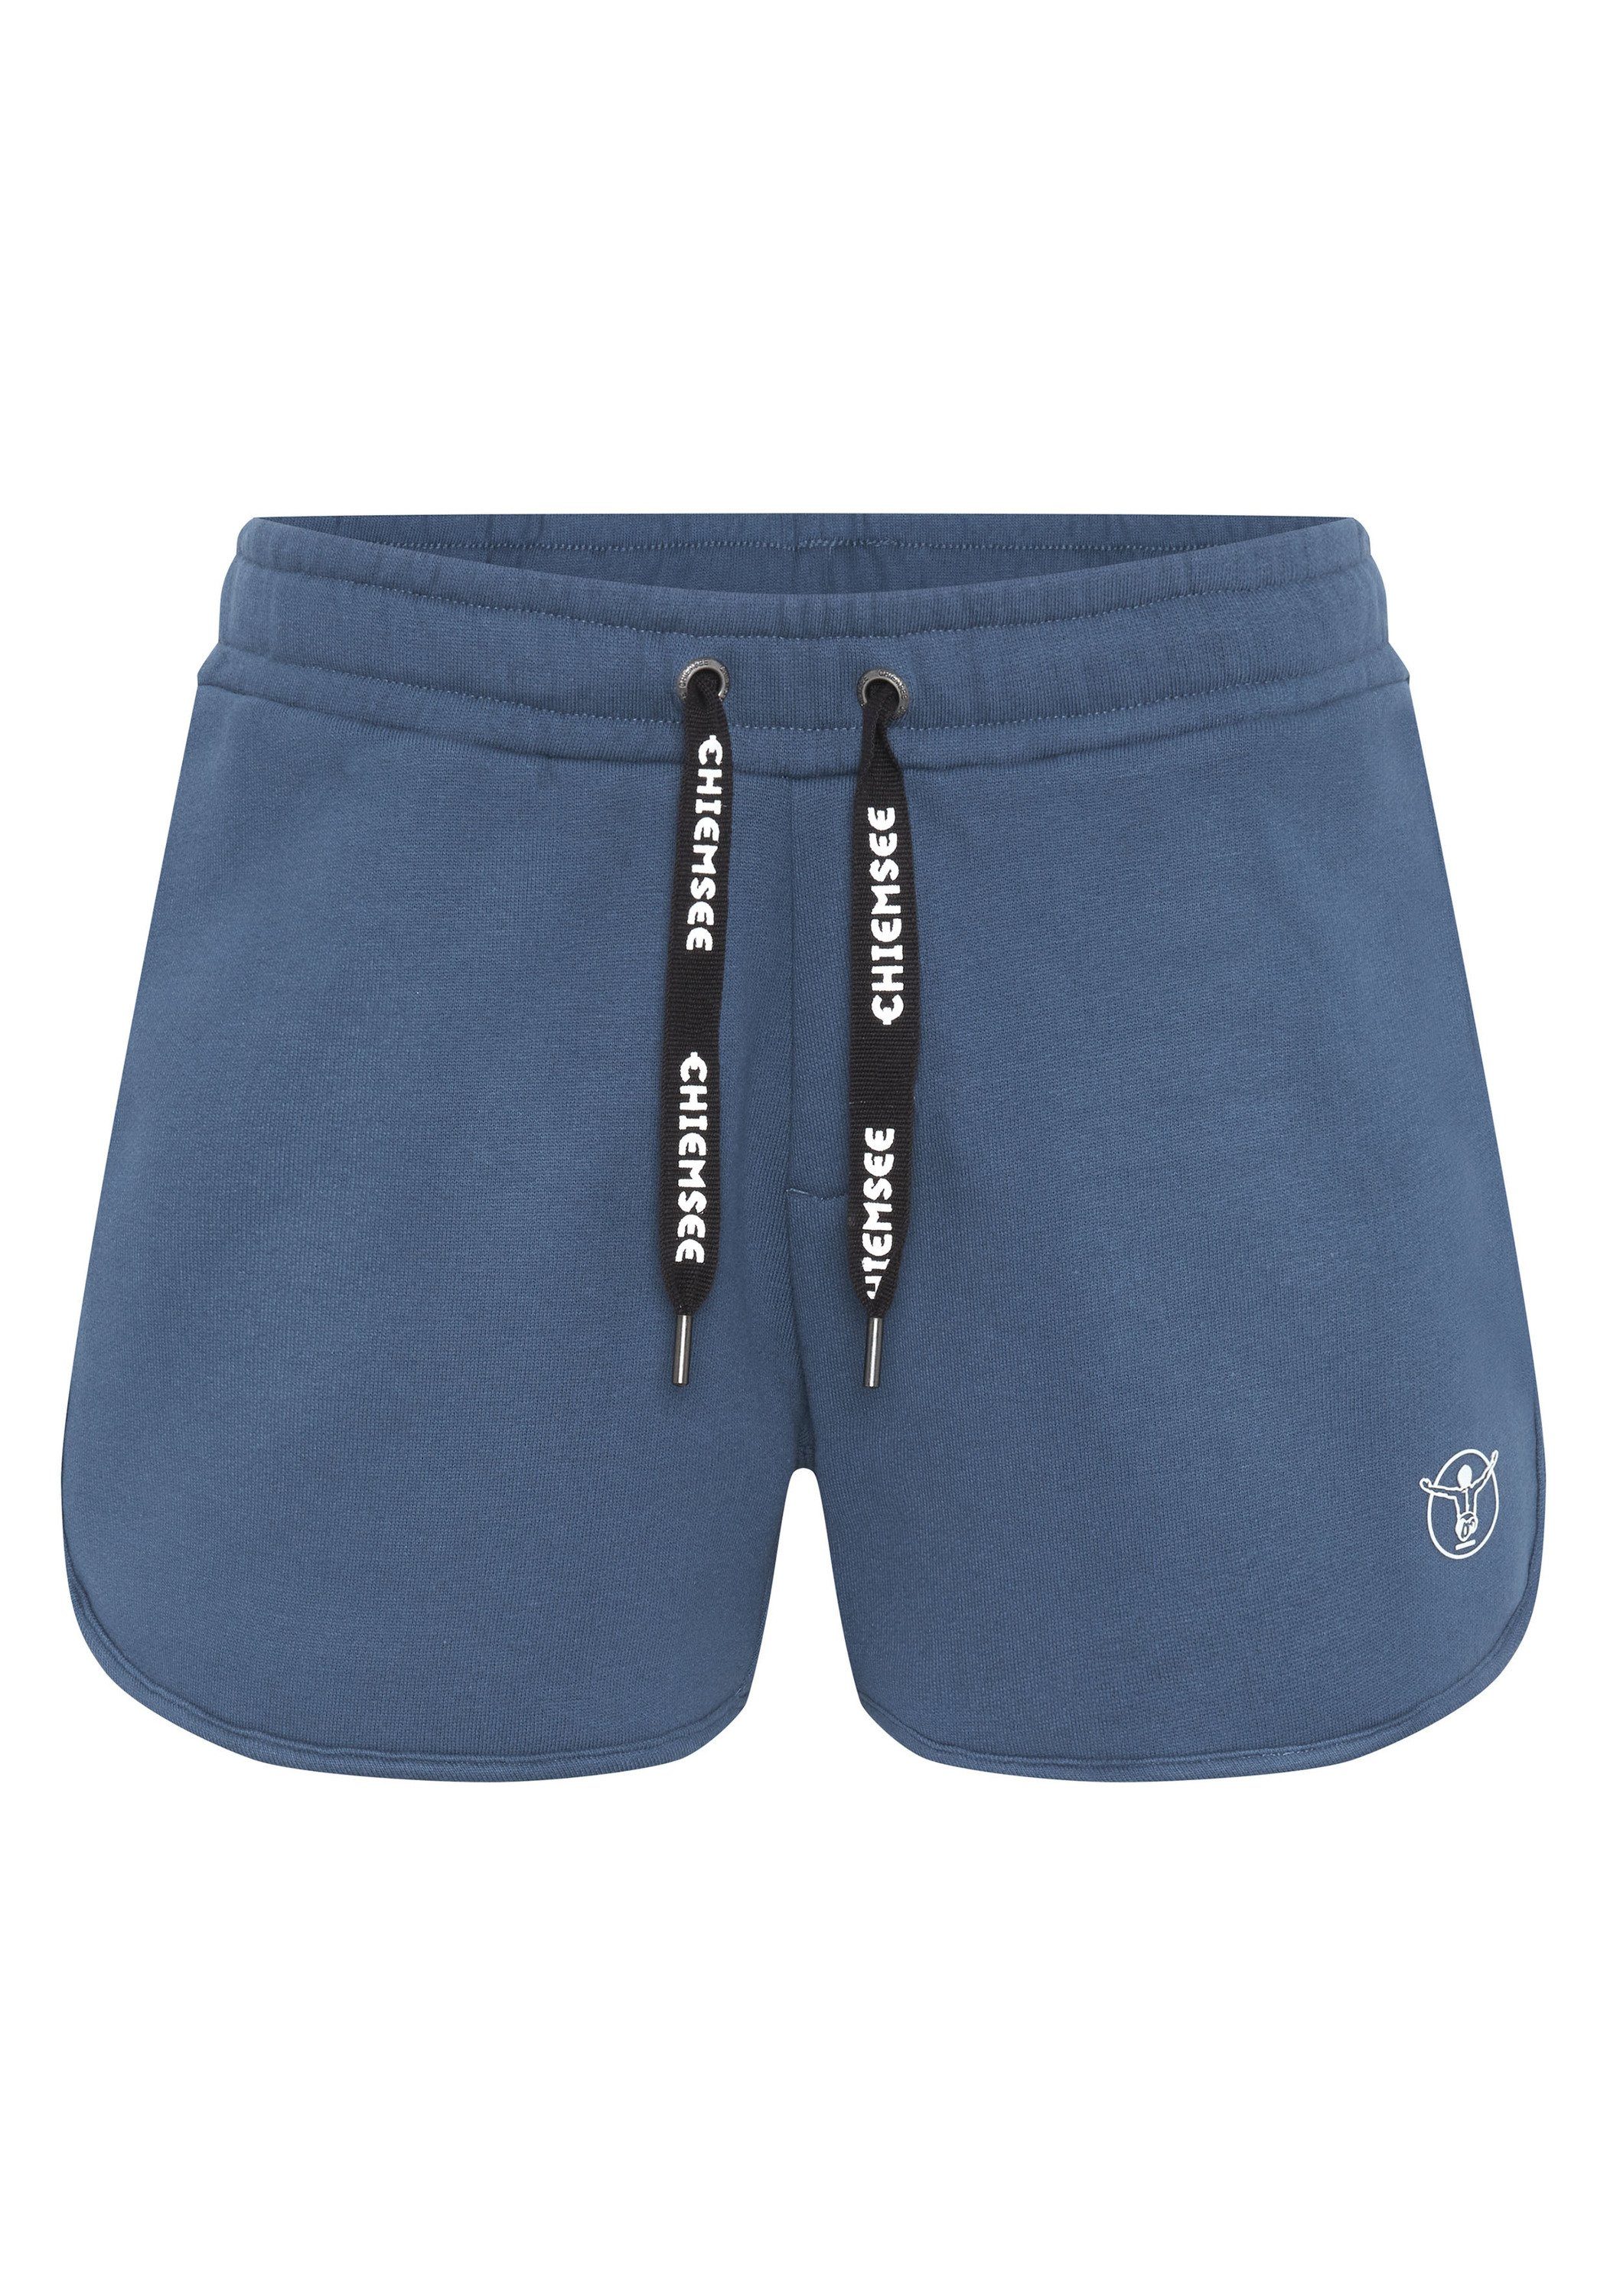 Chiemsee Sweatshorts Sweat-Shorts mit breitem Bund 1 Dark Denim